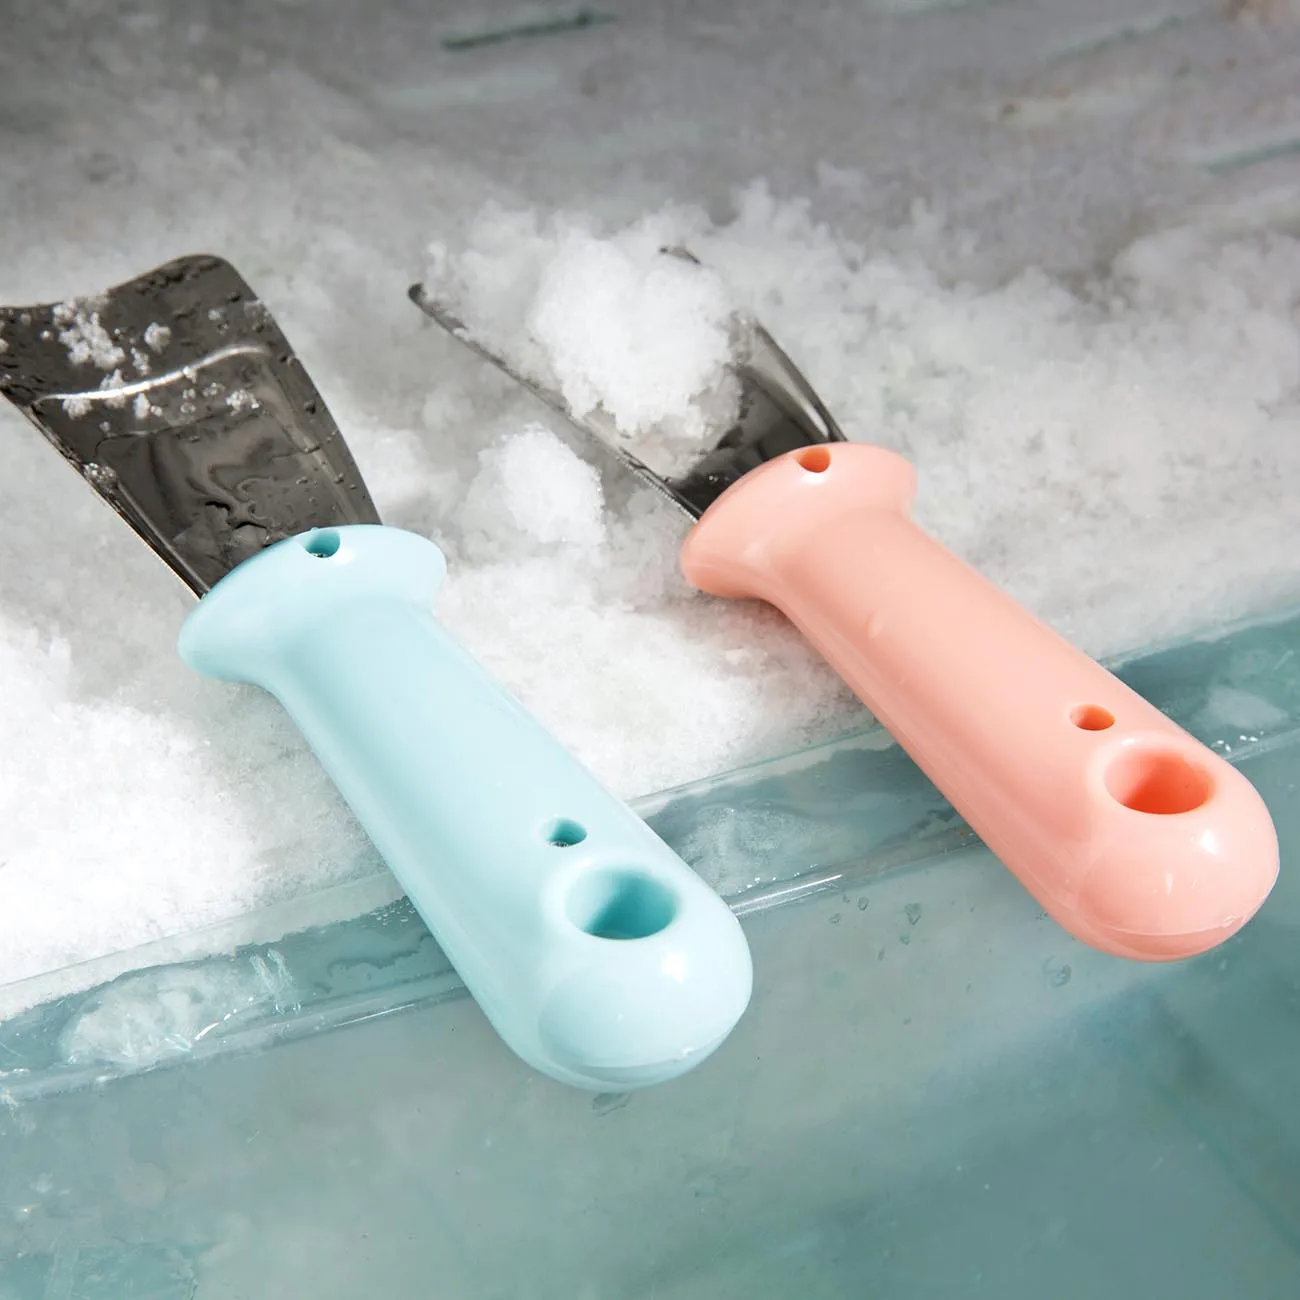 OTHERHOUSE холодильник для разморозки льда Лопата лопатка для домашнего обледенения чистящий гаджет для разморозки льда скребок для чистки кухонной утвари